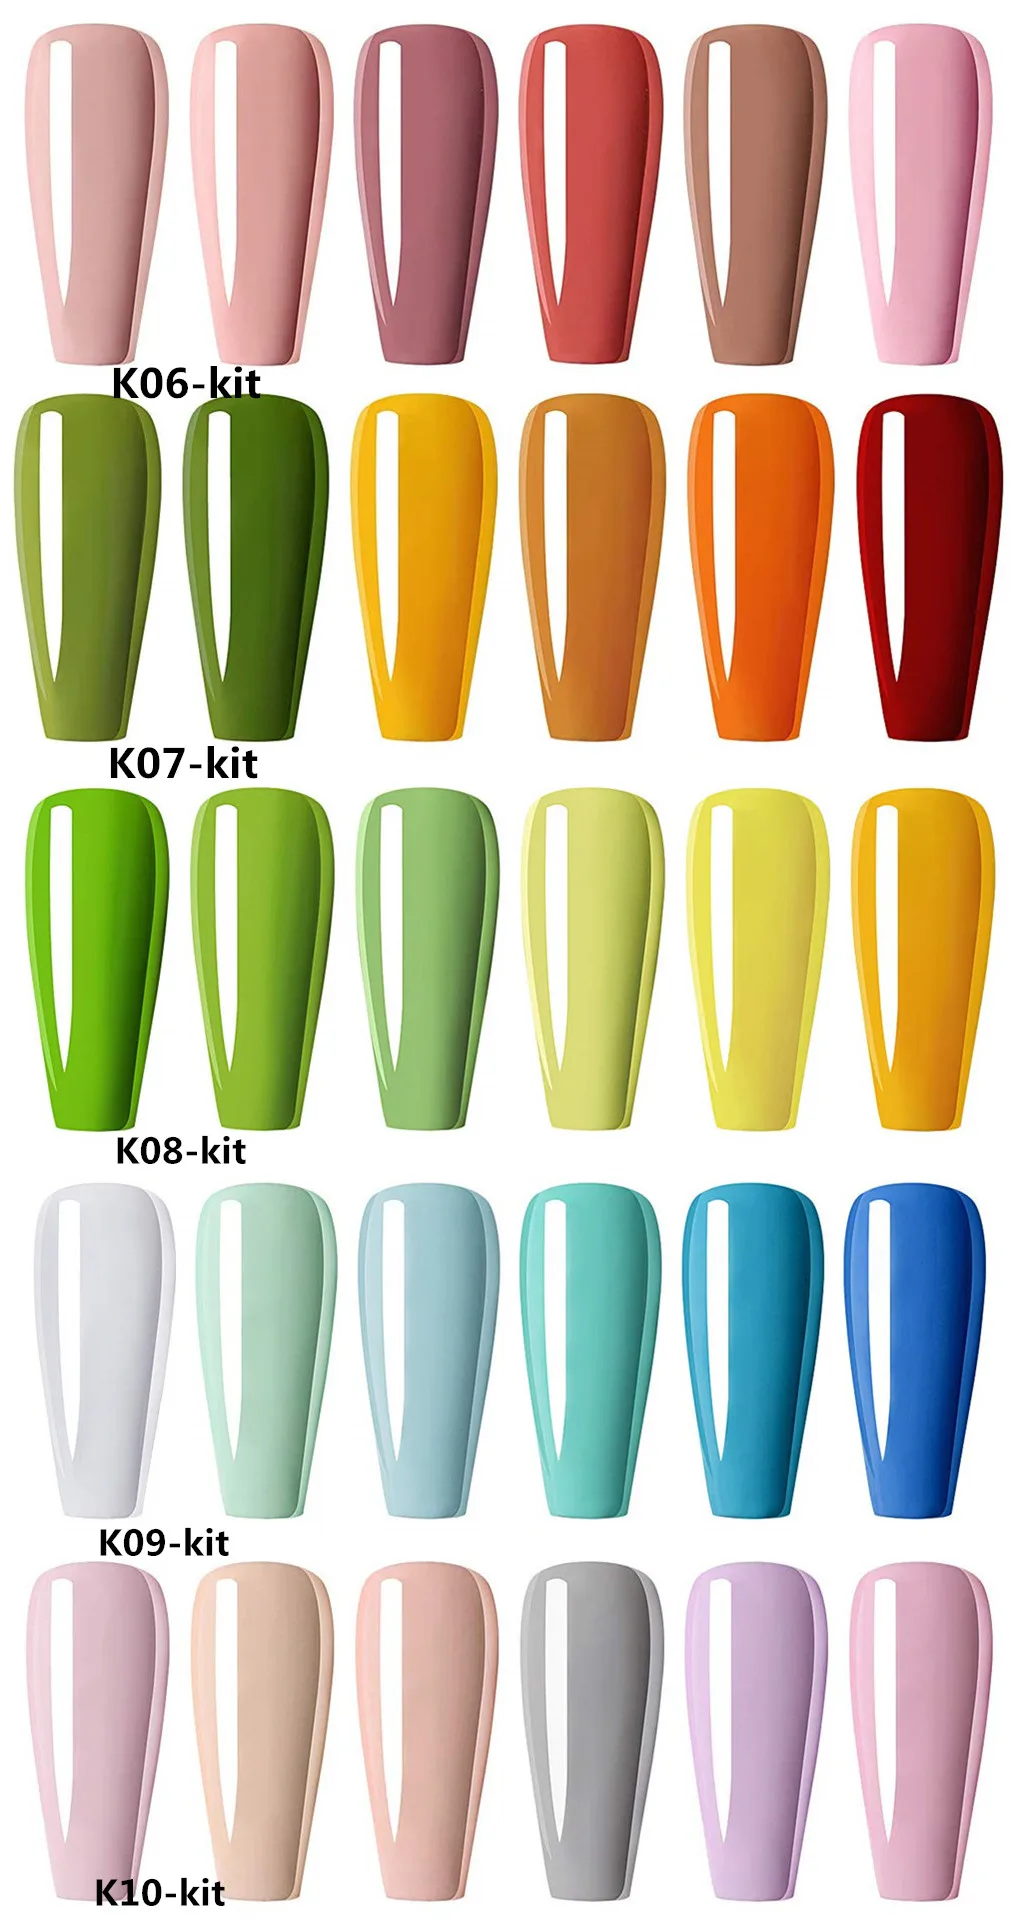 Awsm цветной набор гель-лаков для ногтей, осенняя серия 6 цветов, УФ-светодиодный замачиваемый набор гелей для ногтей, цвет ногтей красный, желтый, коричневый, листья